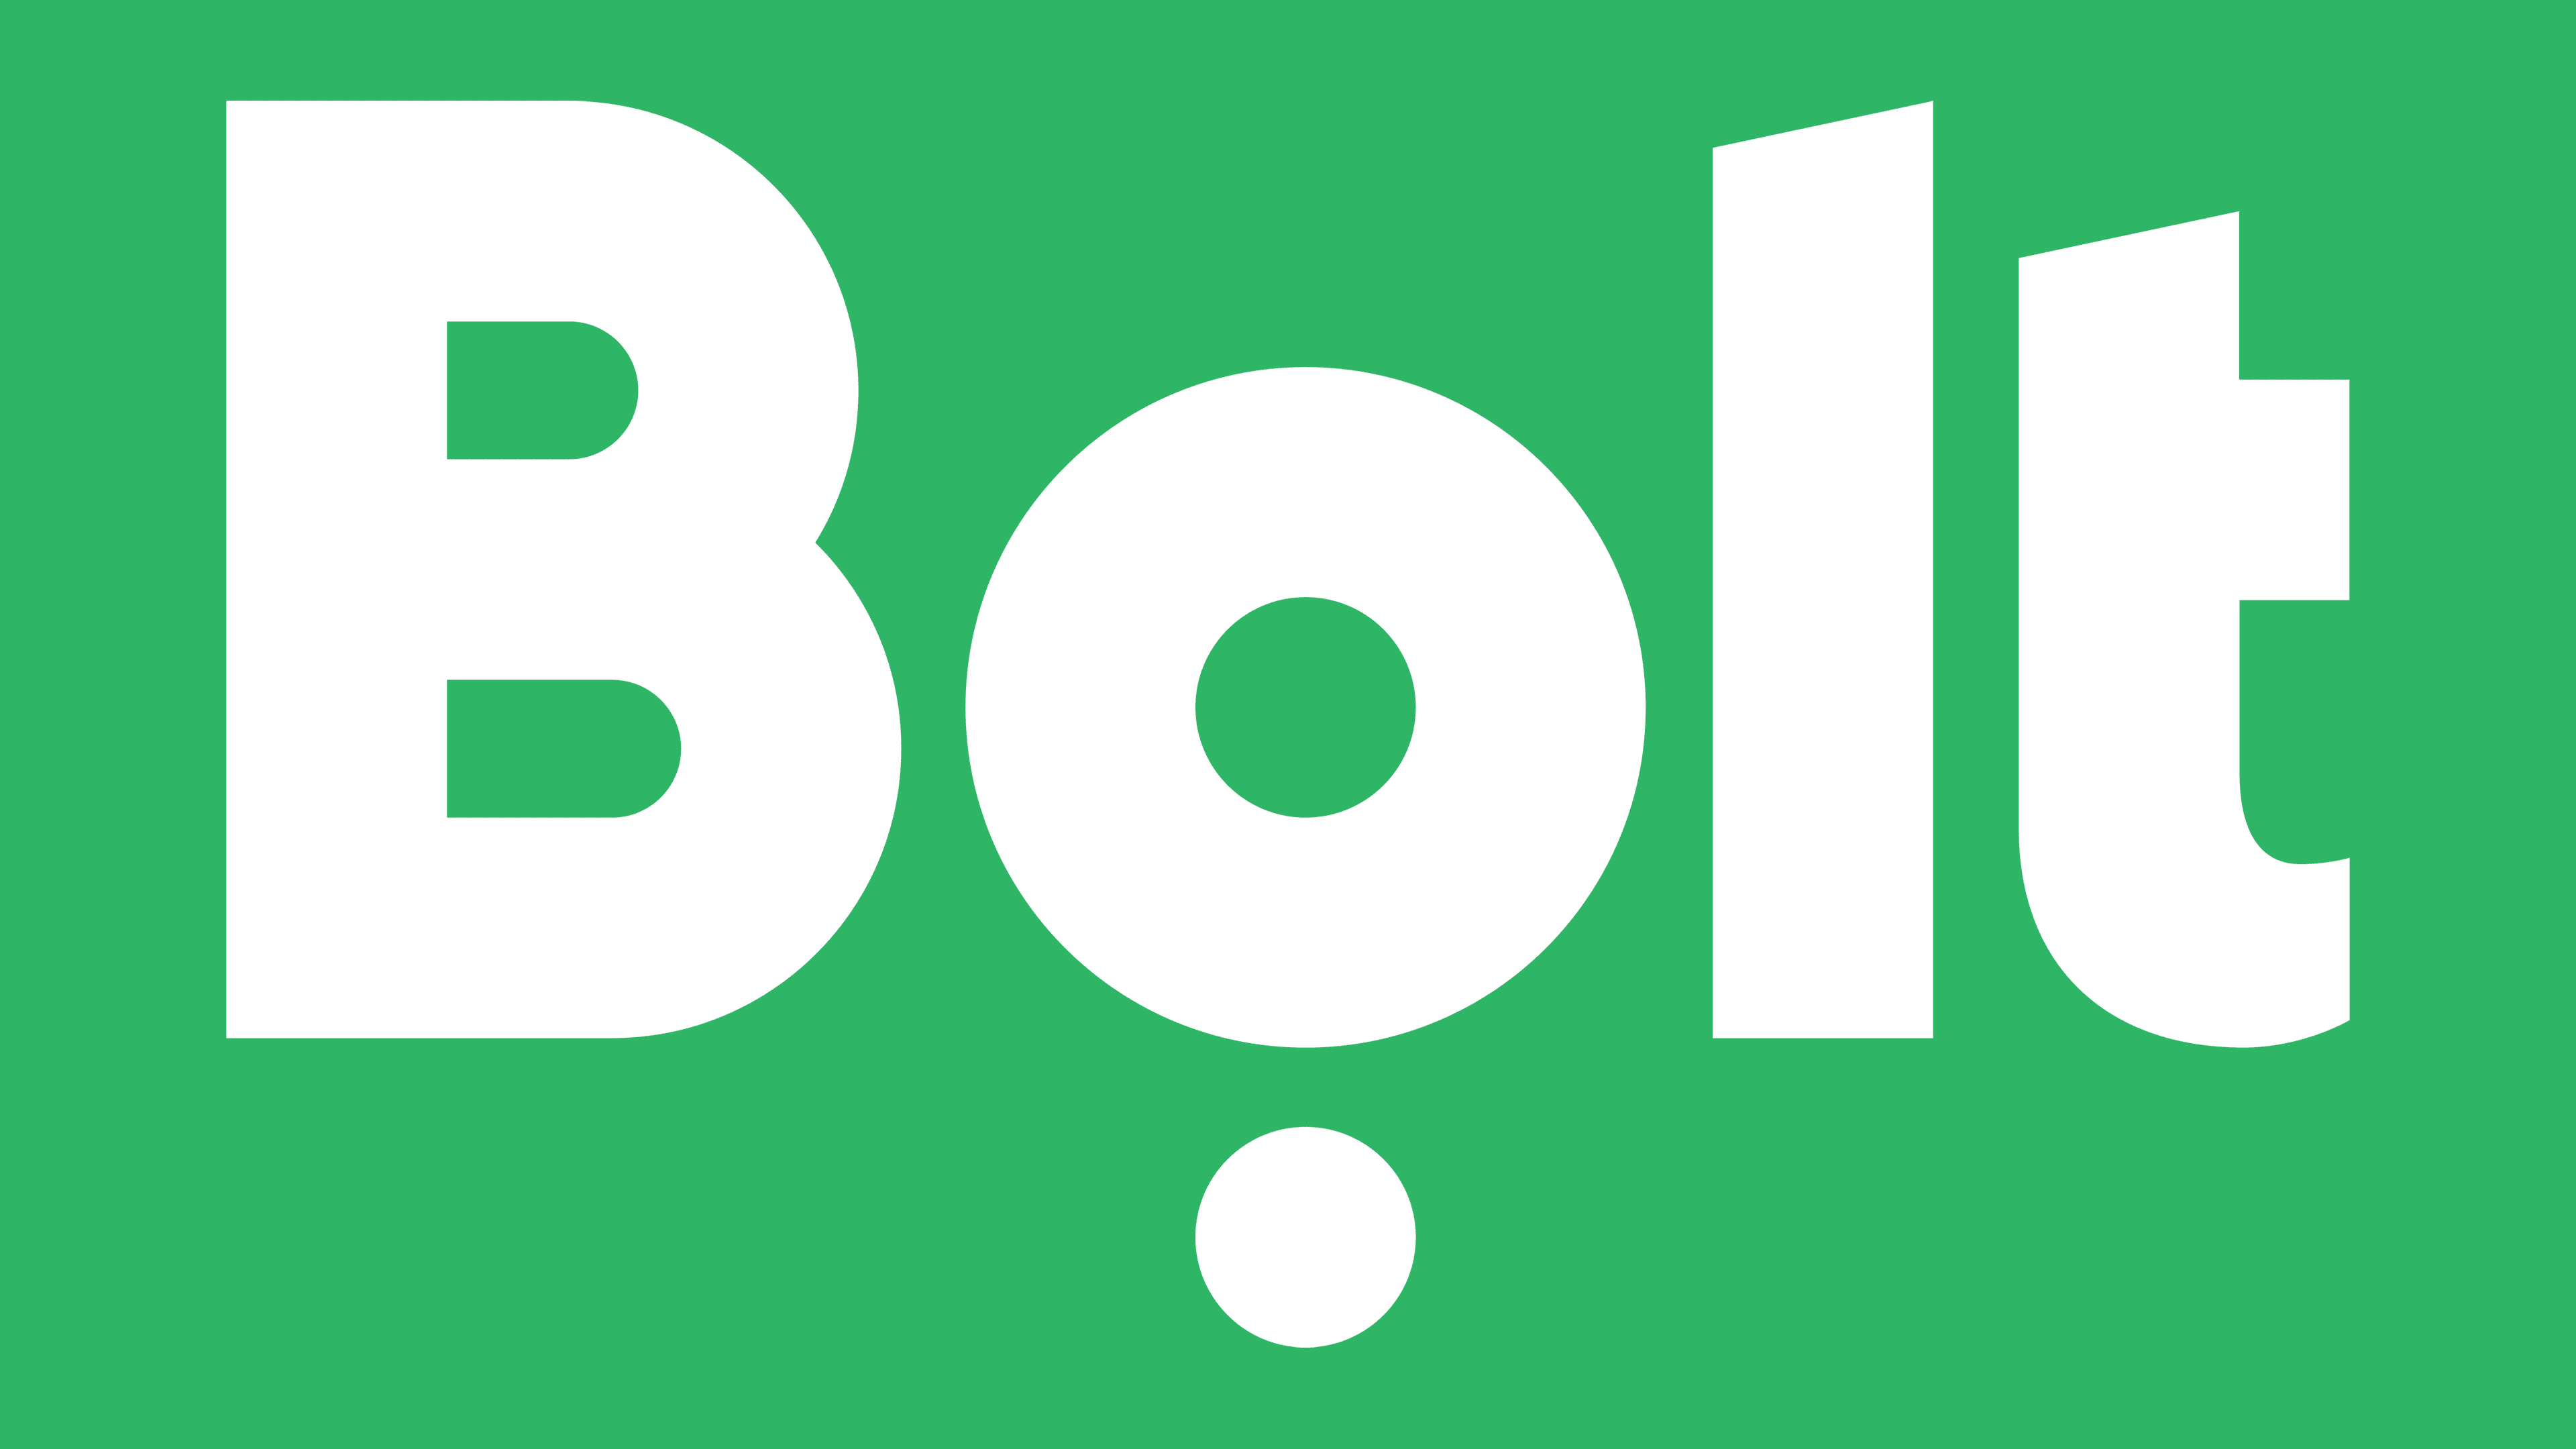 Bolt – Poupa 50% nas viagens